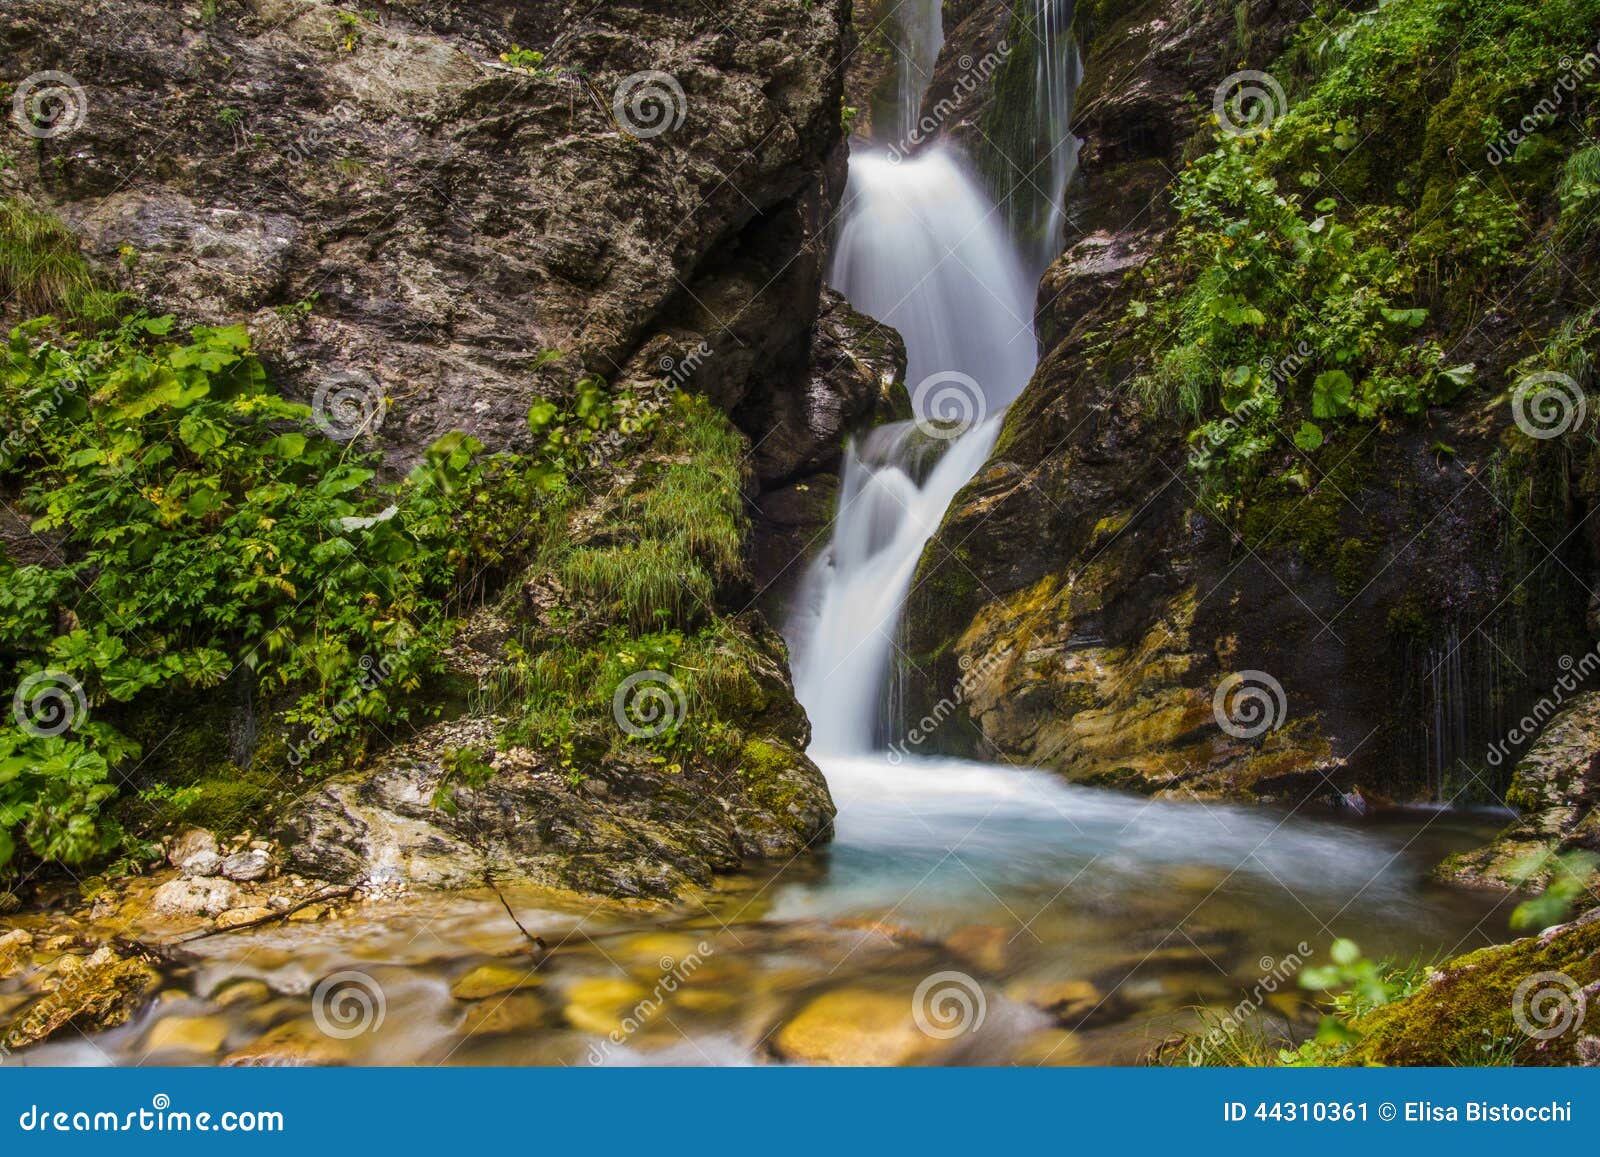 rio arno waterfall in abruzzo